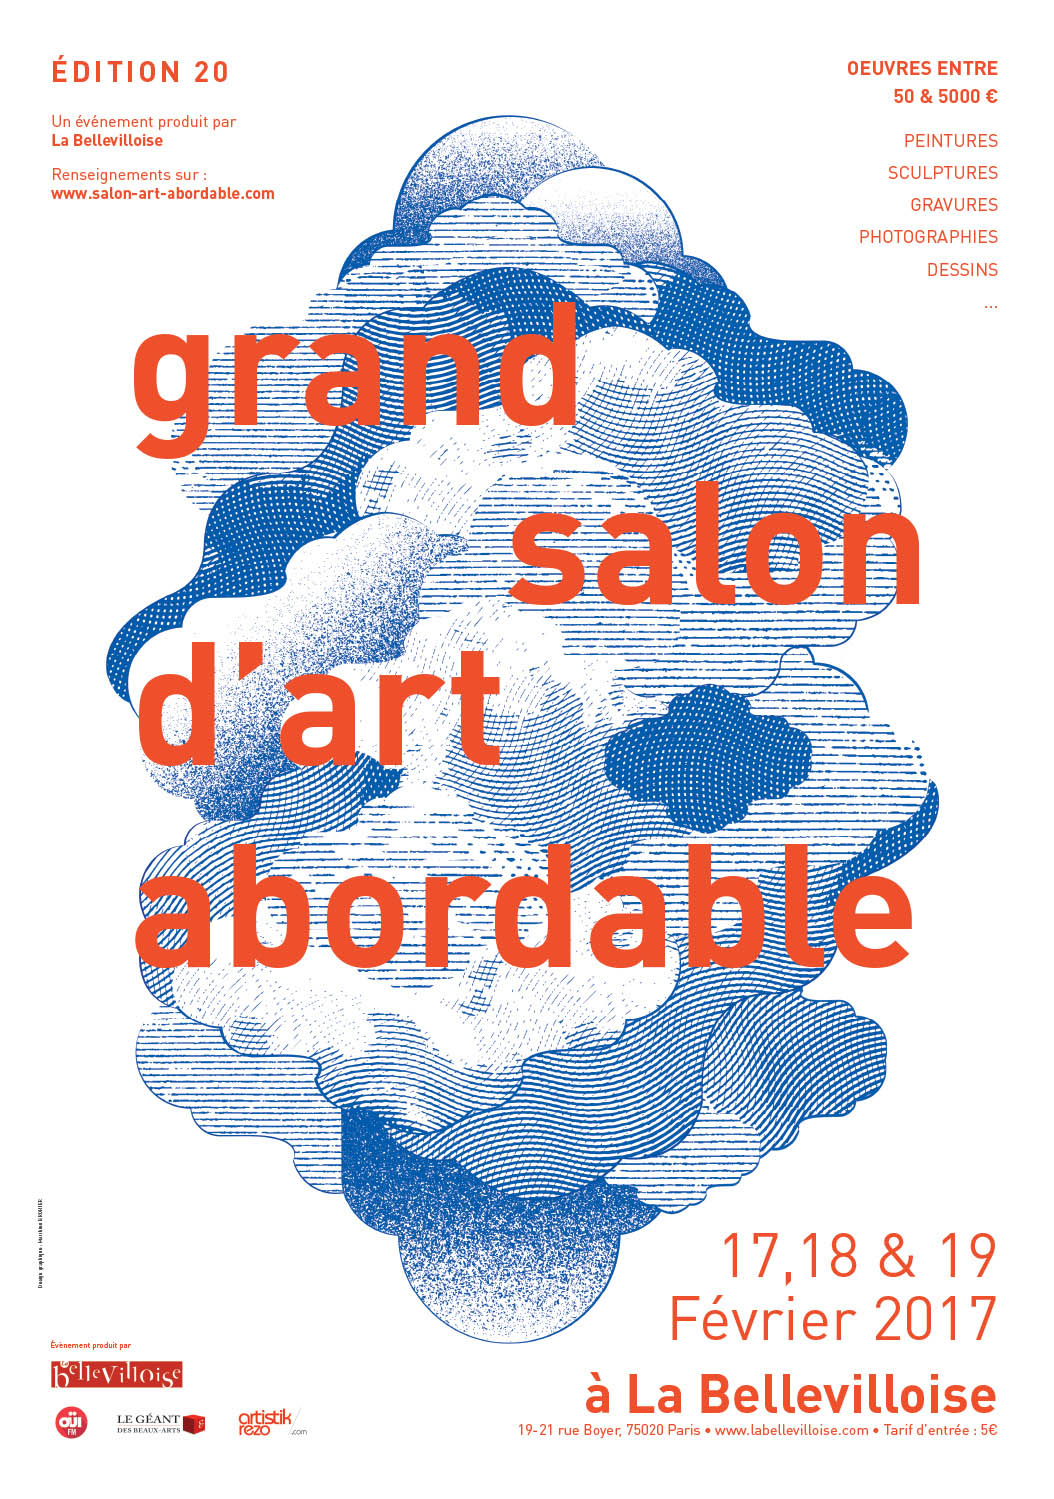 Grand Salon d'Art Abordable à La Bellevilloise 20ème édition